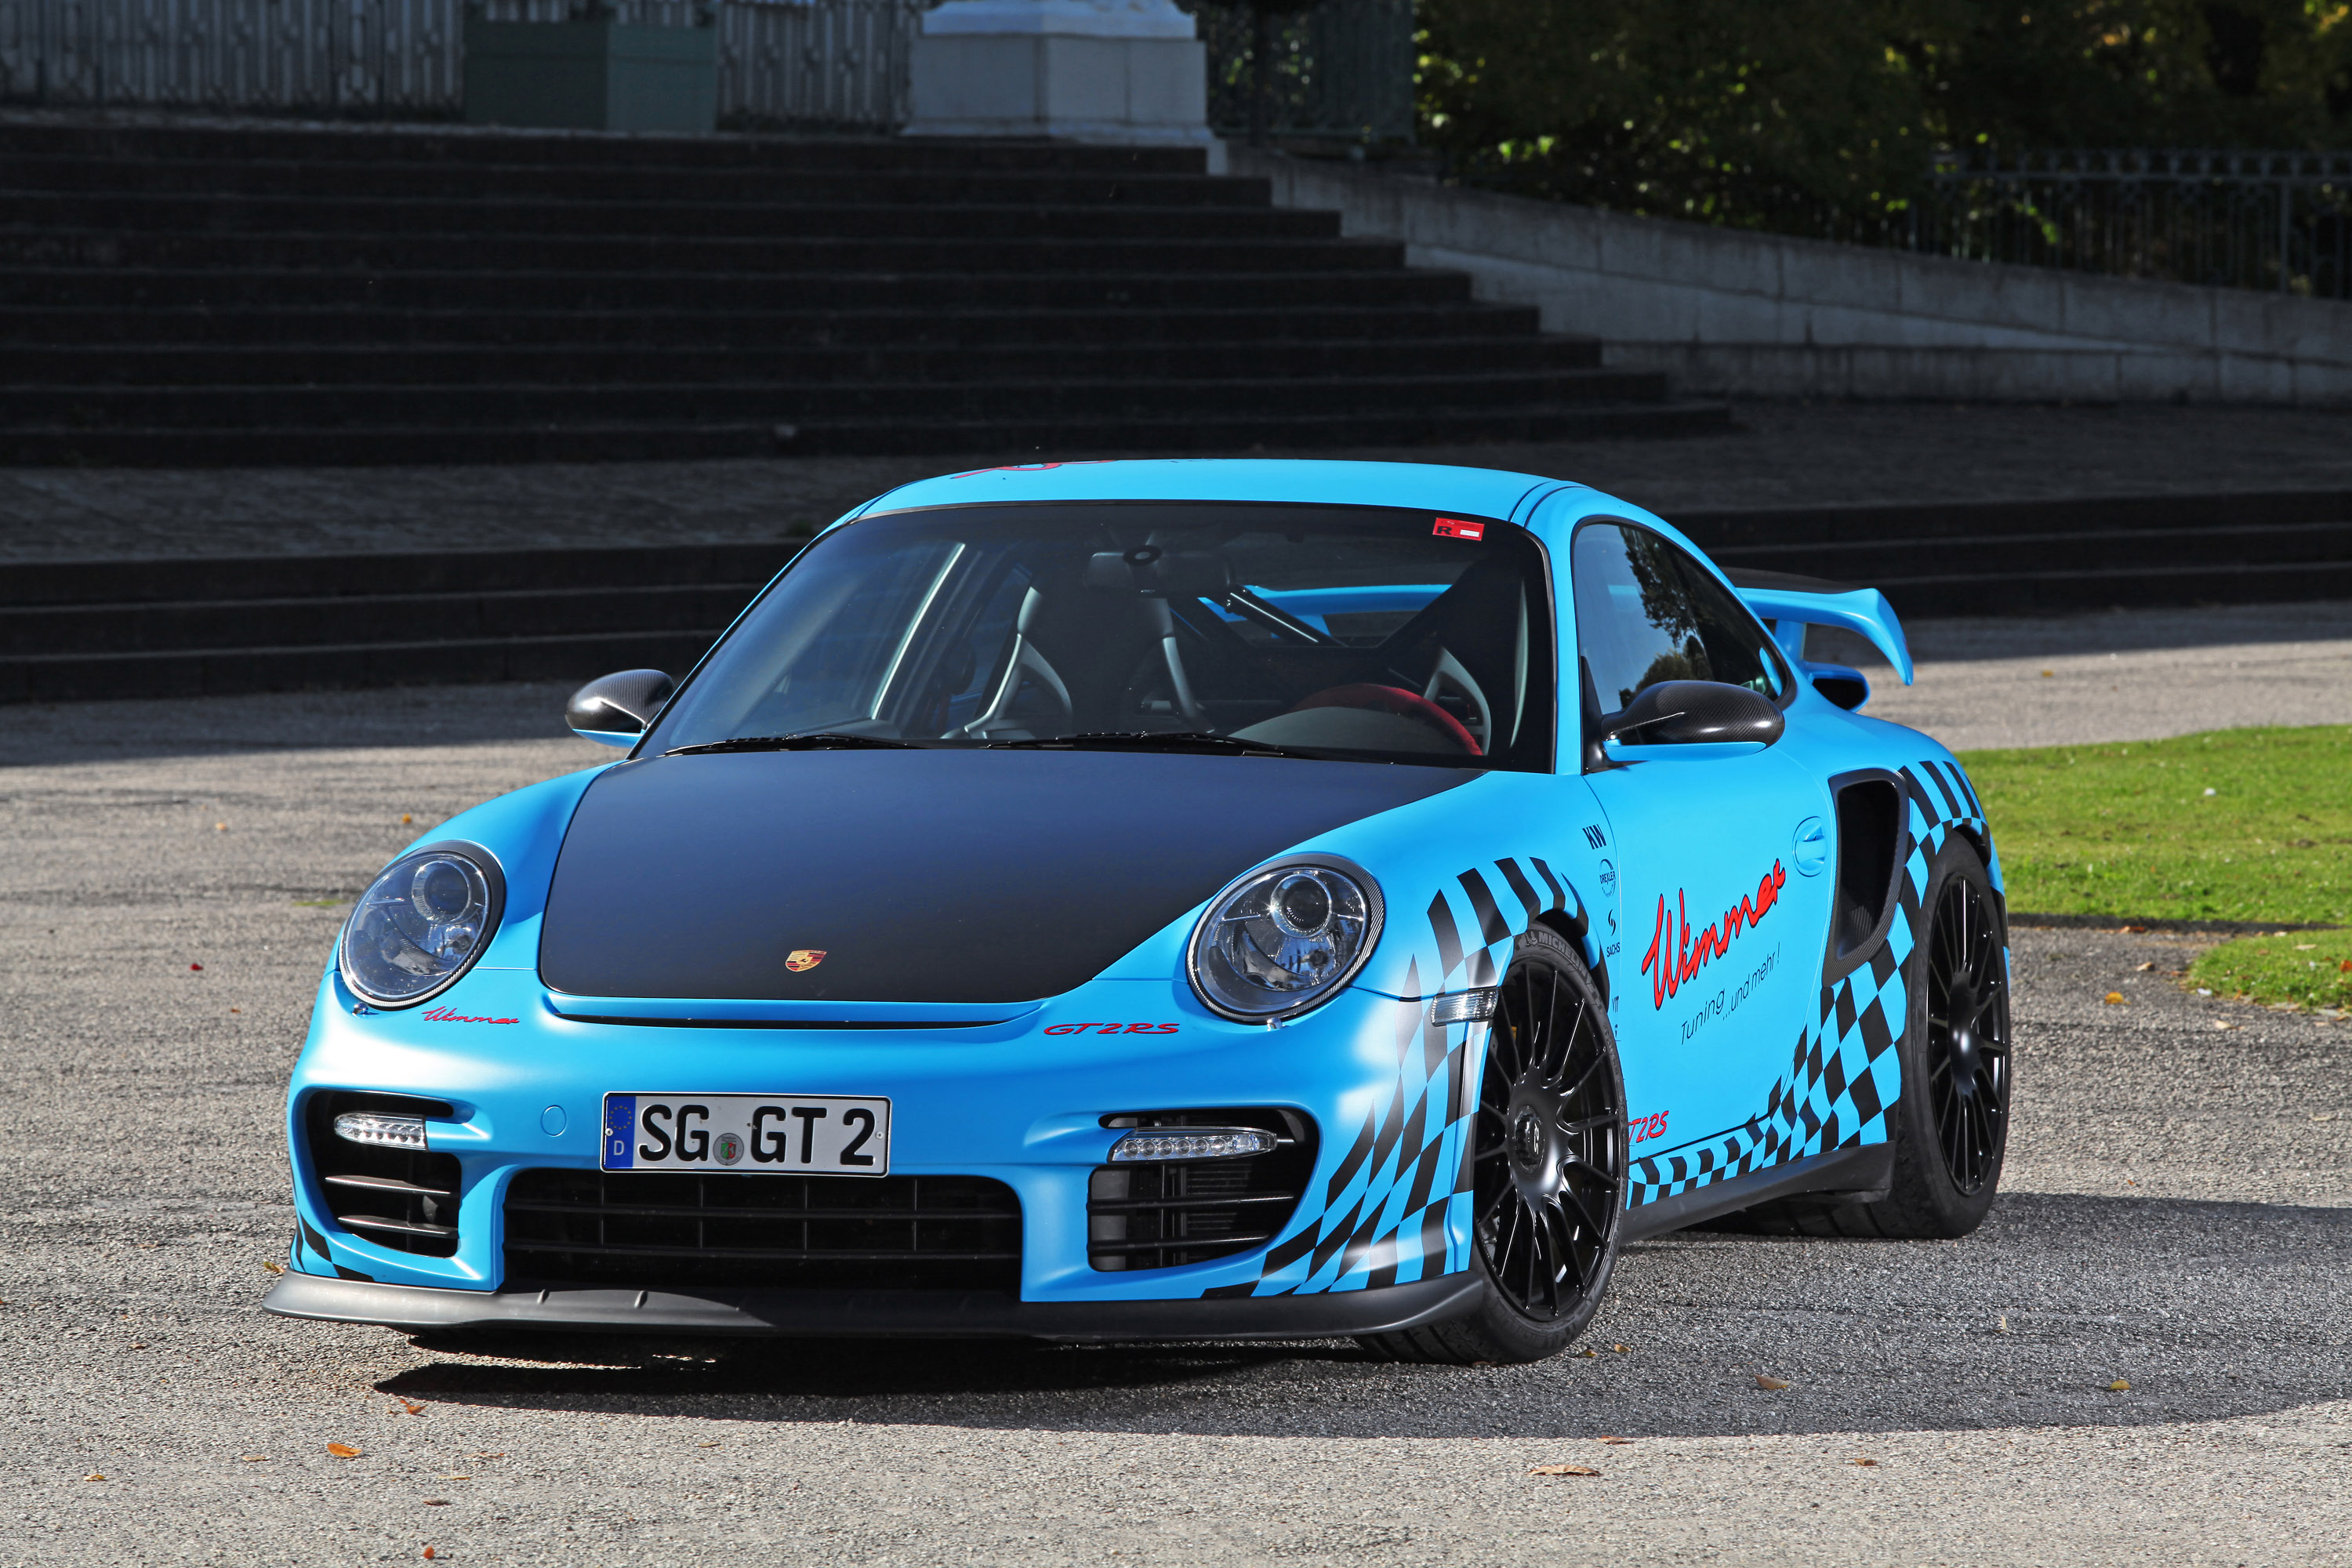 Descargar fondos de escritorio de Porsche 911 Gt2 HD